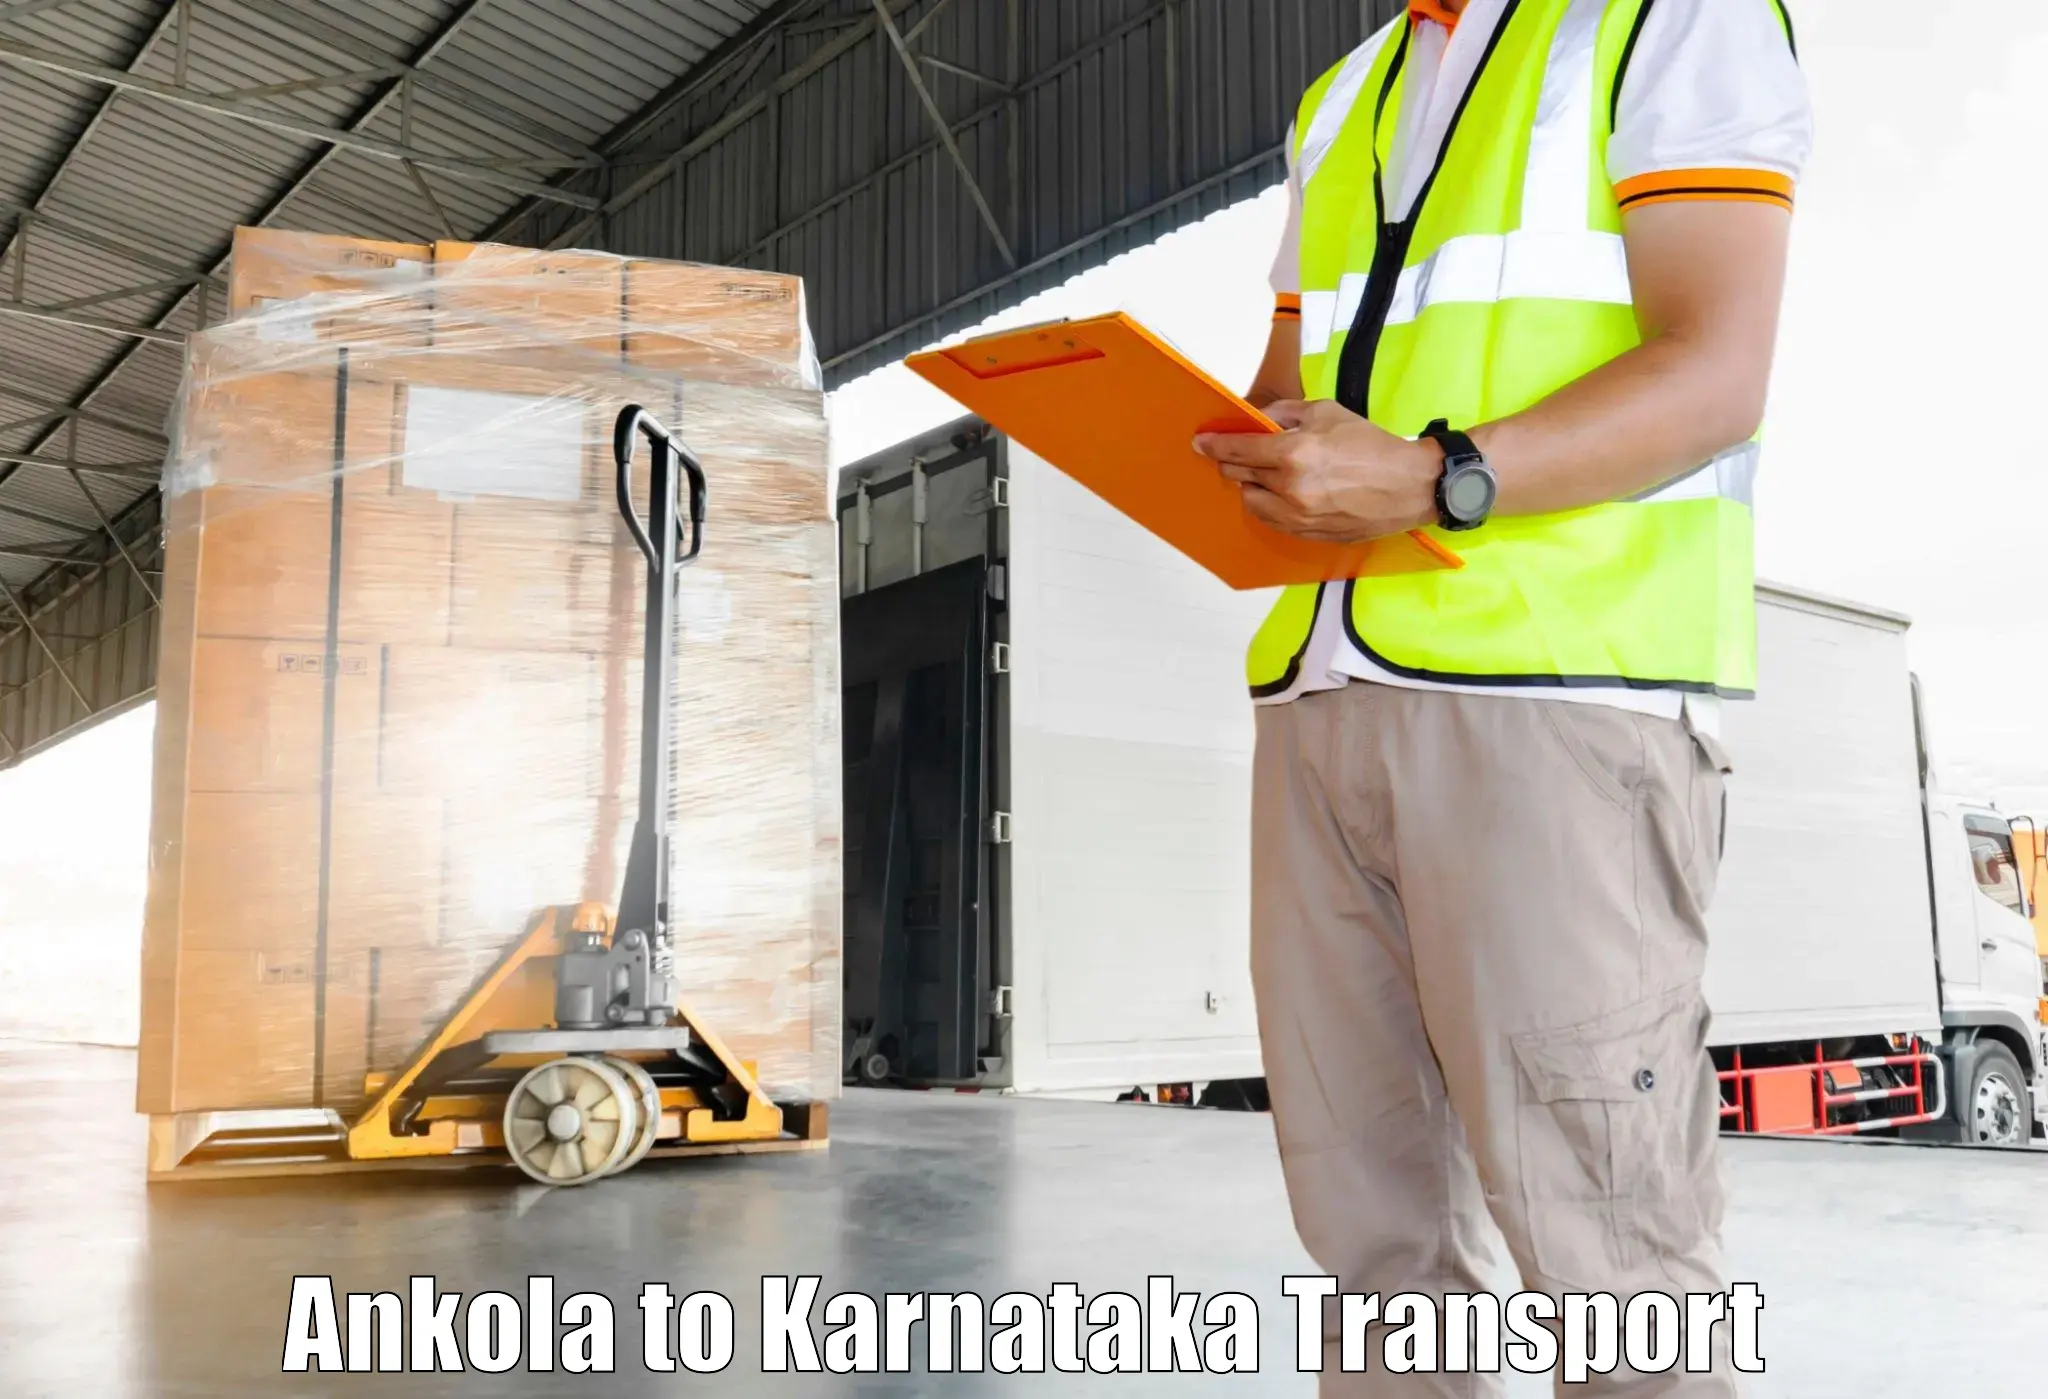 Nearest transport service Ankola to Sandur